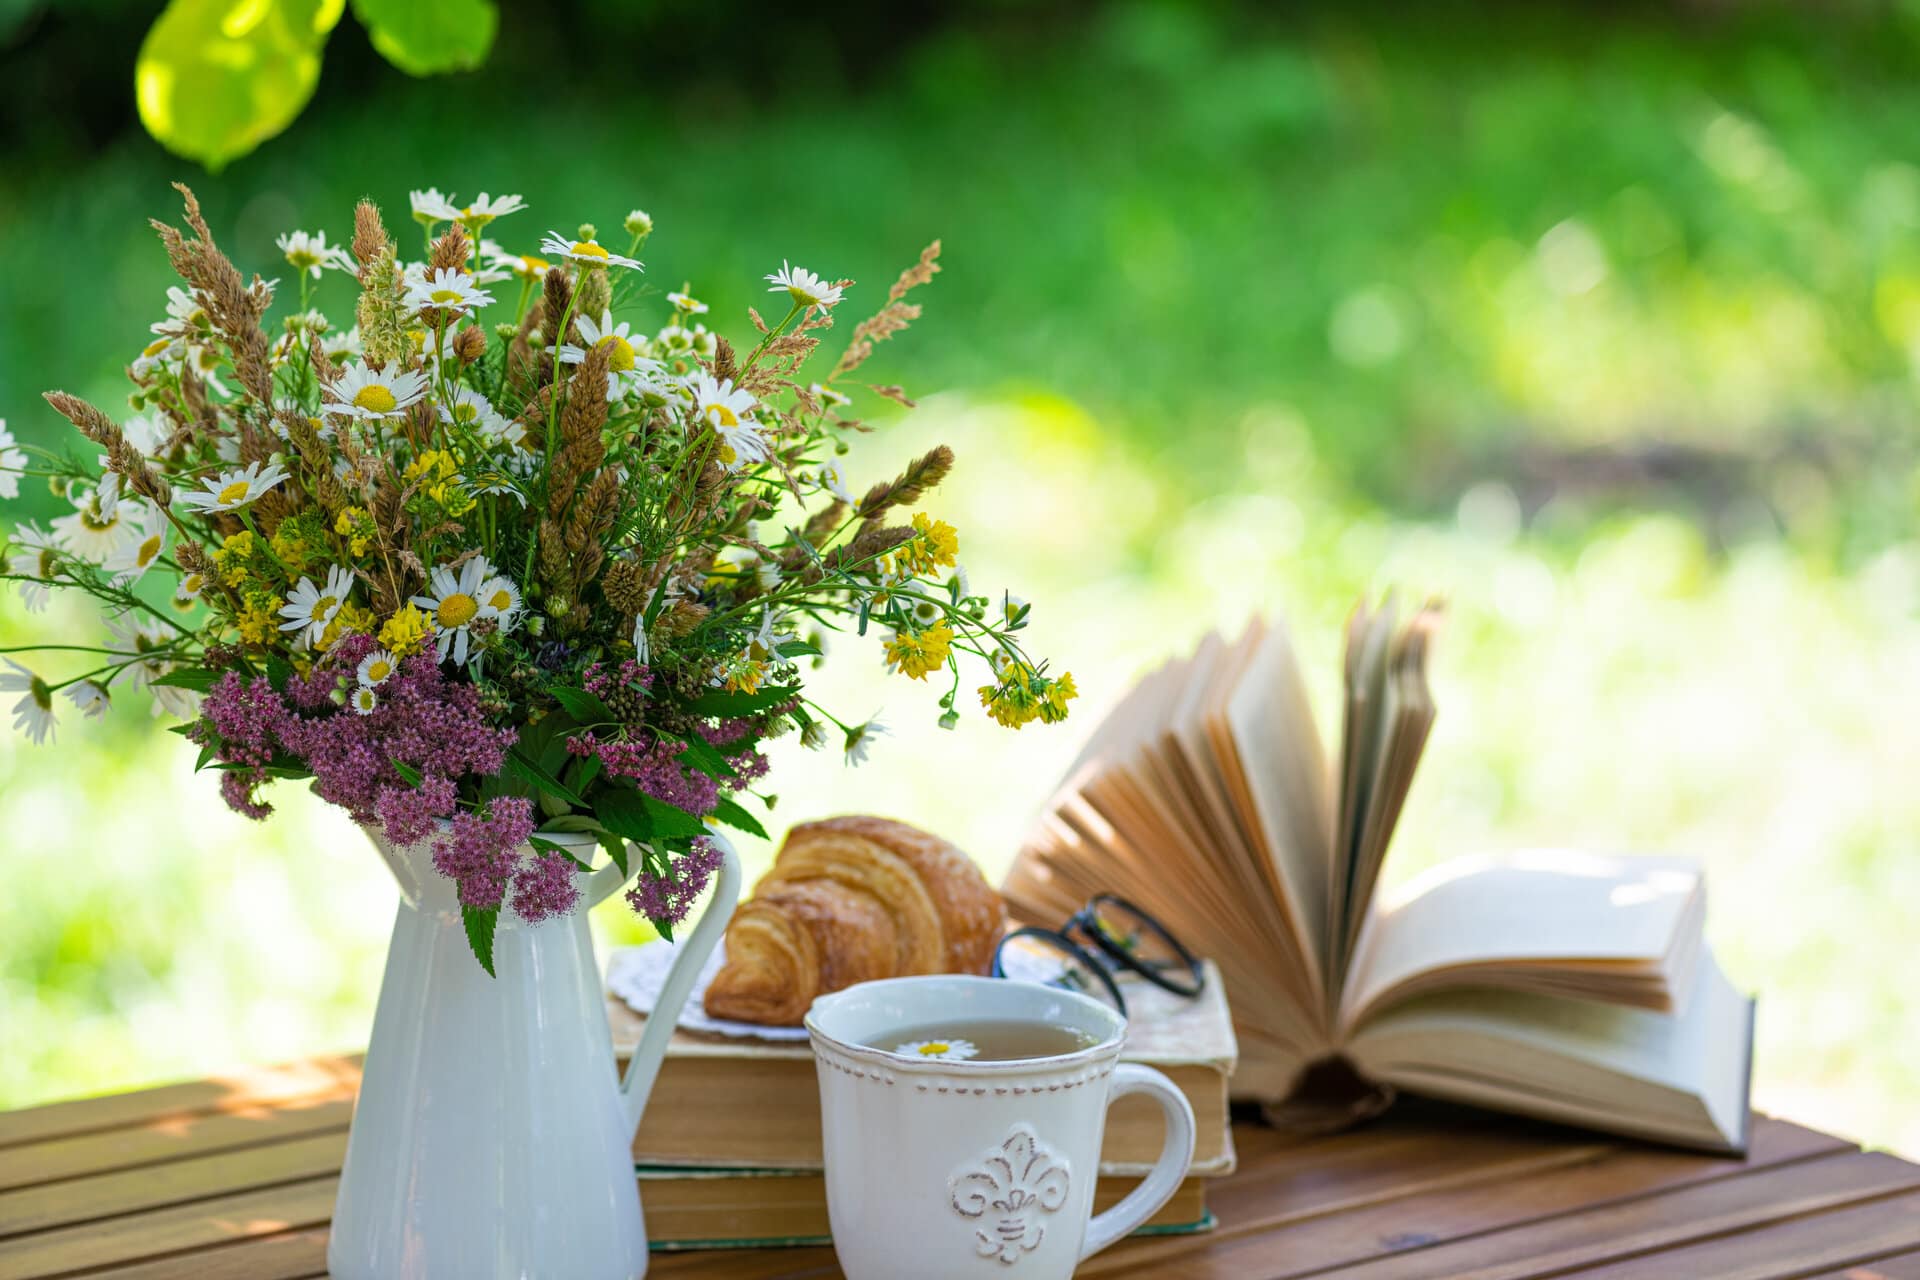 Wiesenblumenstrauß in weißer Porzellanvase auf Holztisch, daneben ein Teller mit Croissant eine Tasse Tee mit Gänseblümchen und ein aufgeschlagenes Buch, im Hintergrund sonniger grüner Garten